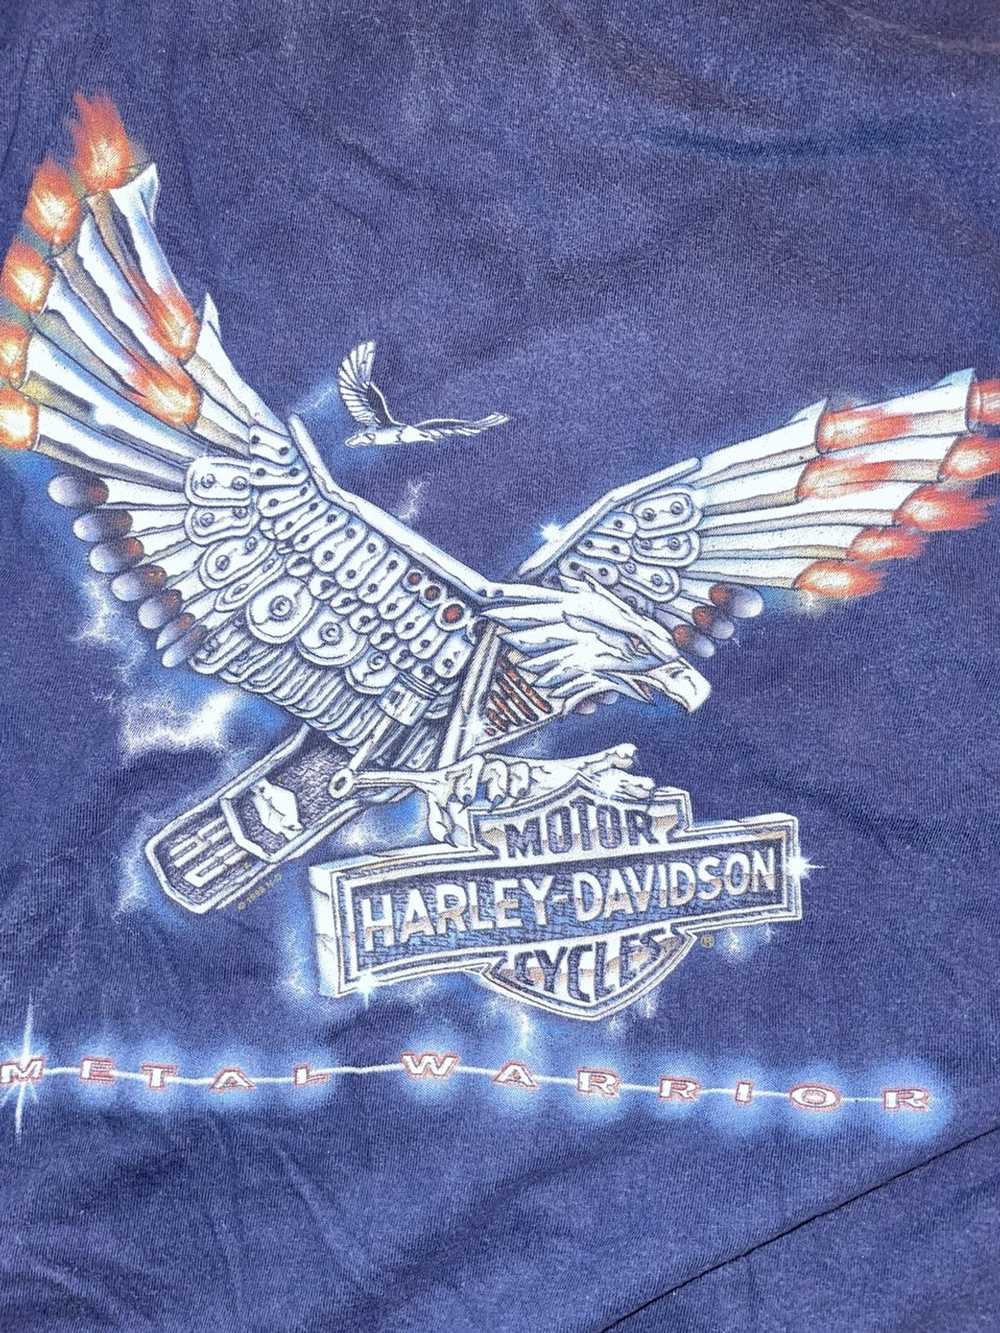 Harley Davidson Vintage Harley Davidson t shirt - image 3